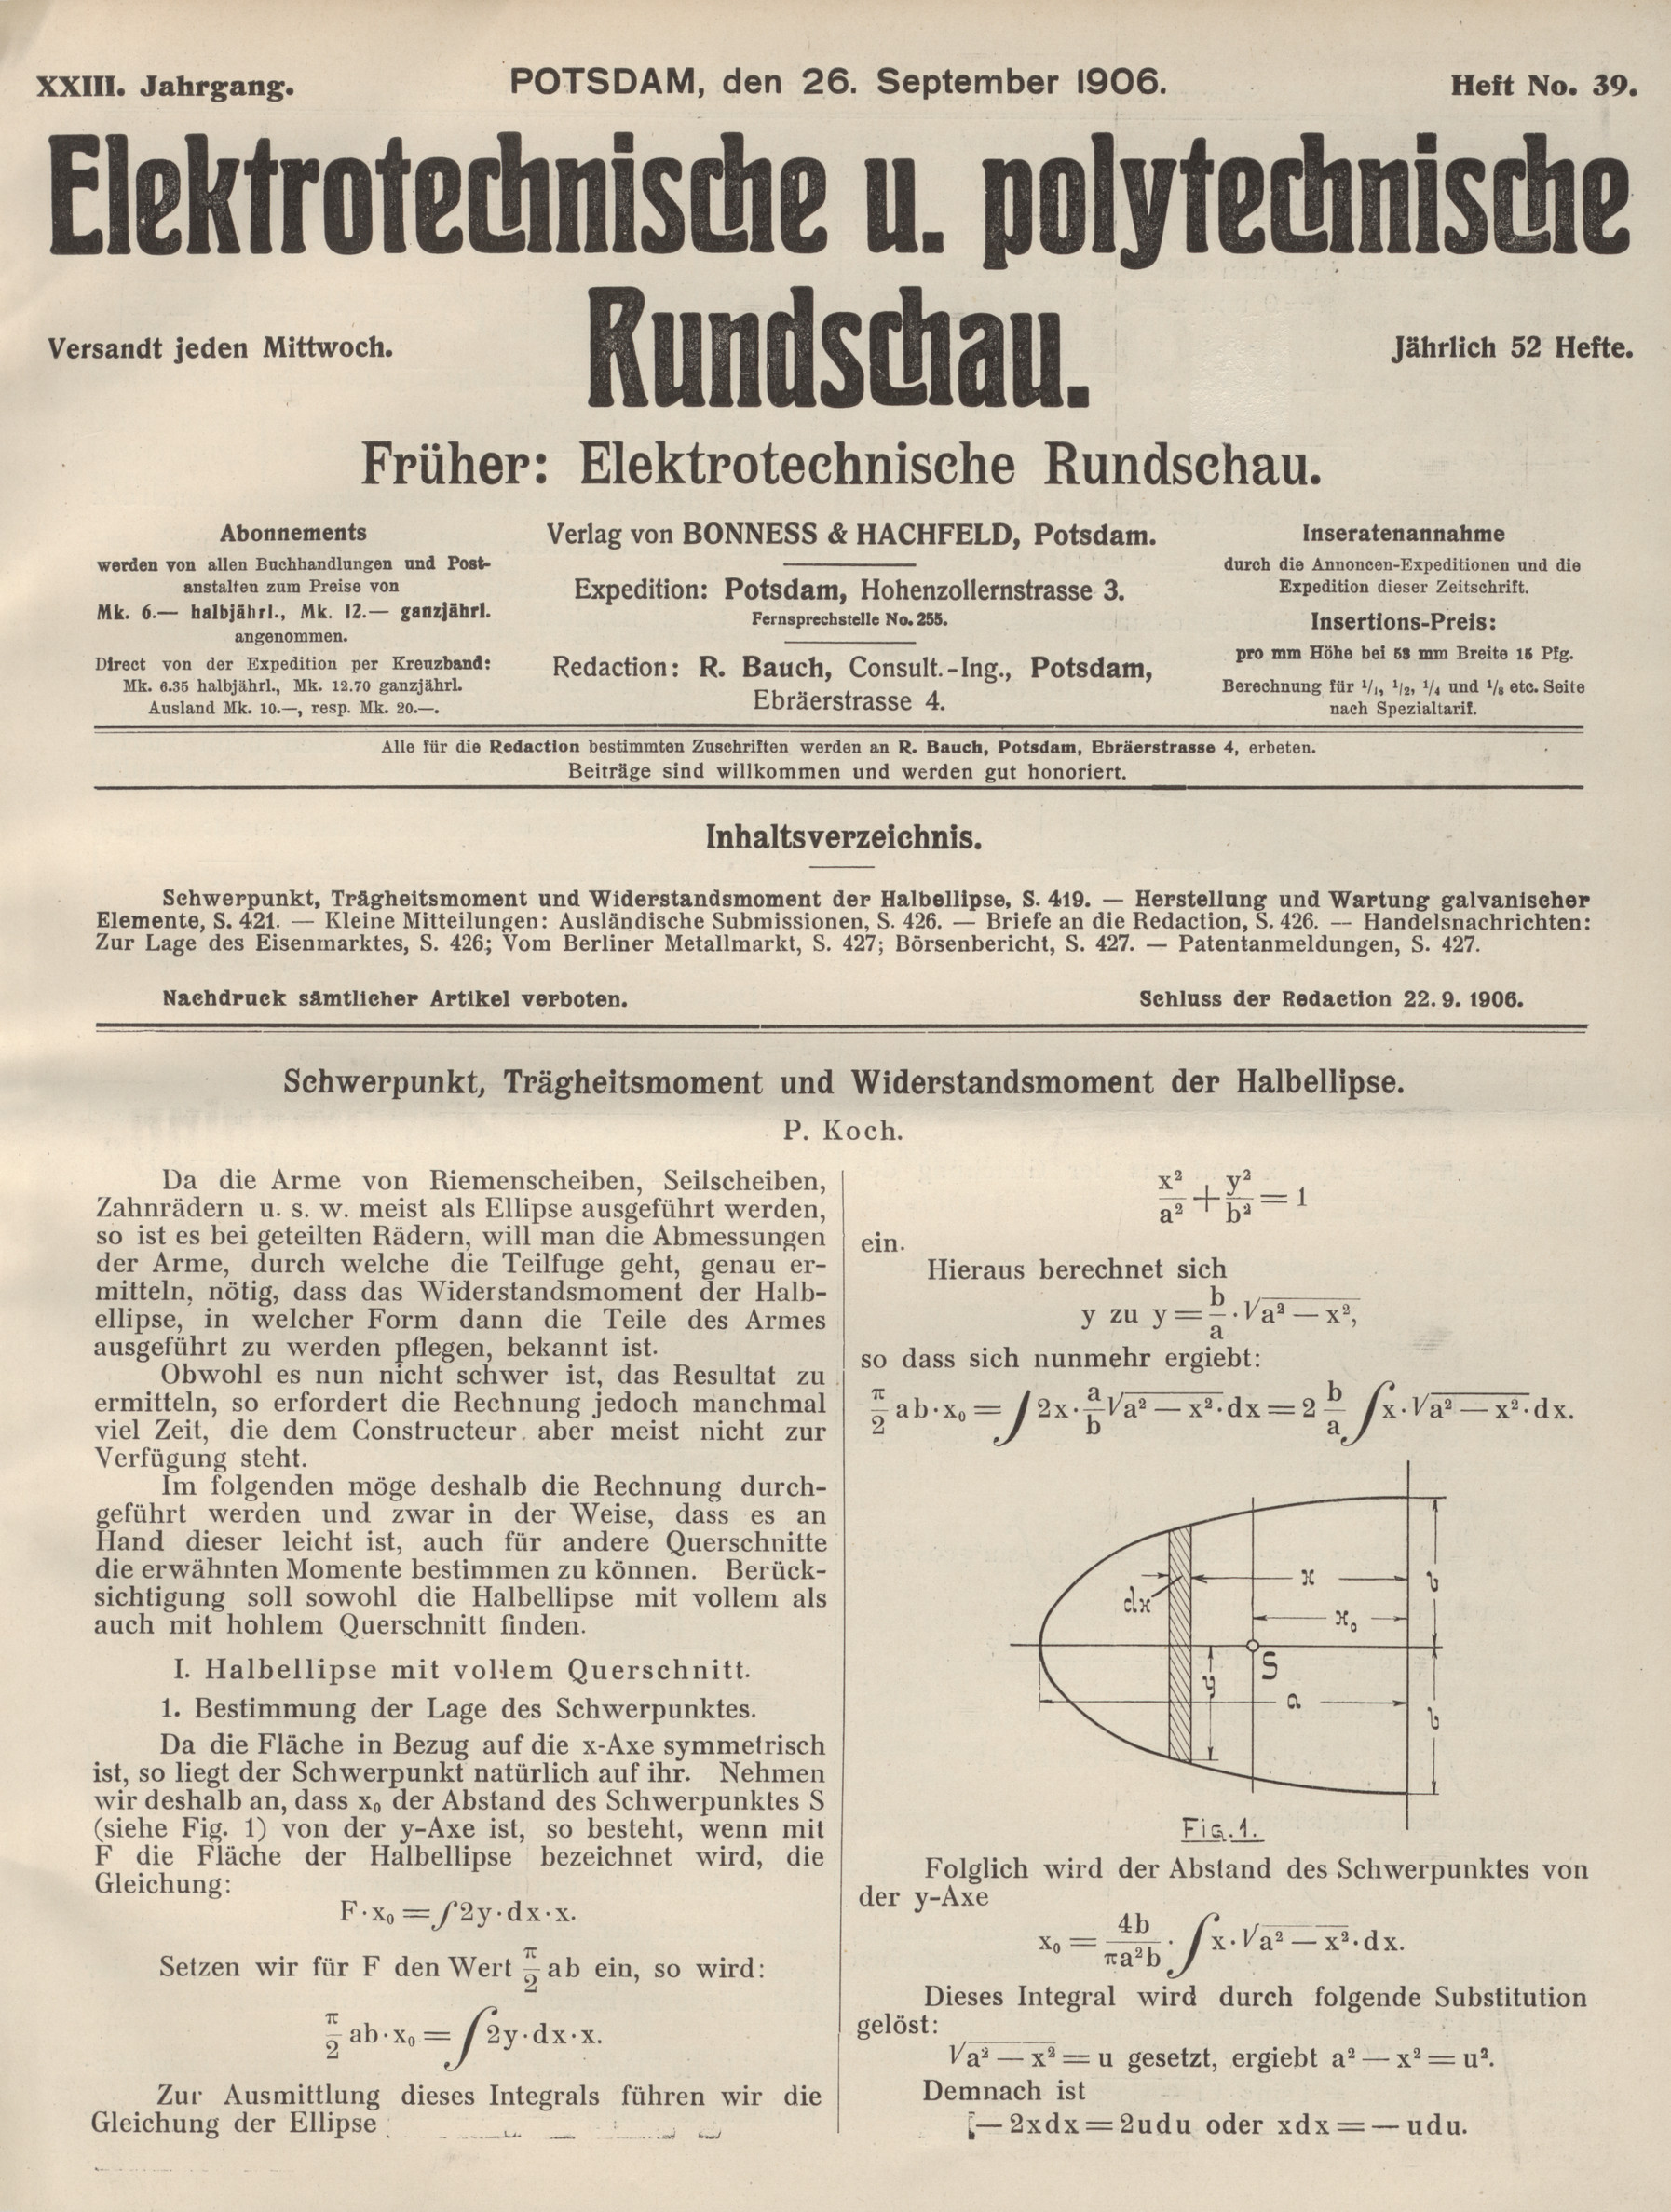 Elektrotechnische und polytechnische Rundschau, XXIII. Jahrgang, Heft No. 39